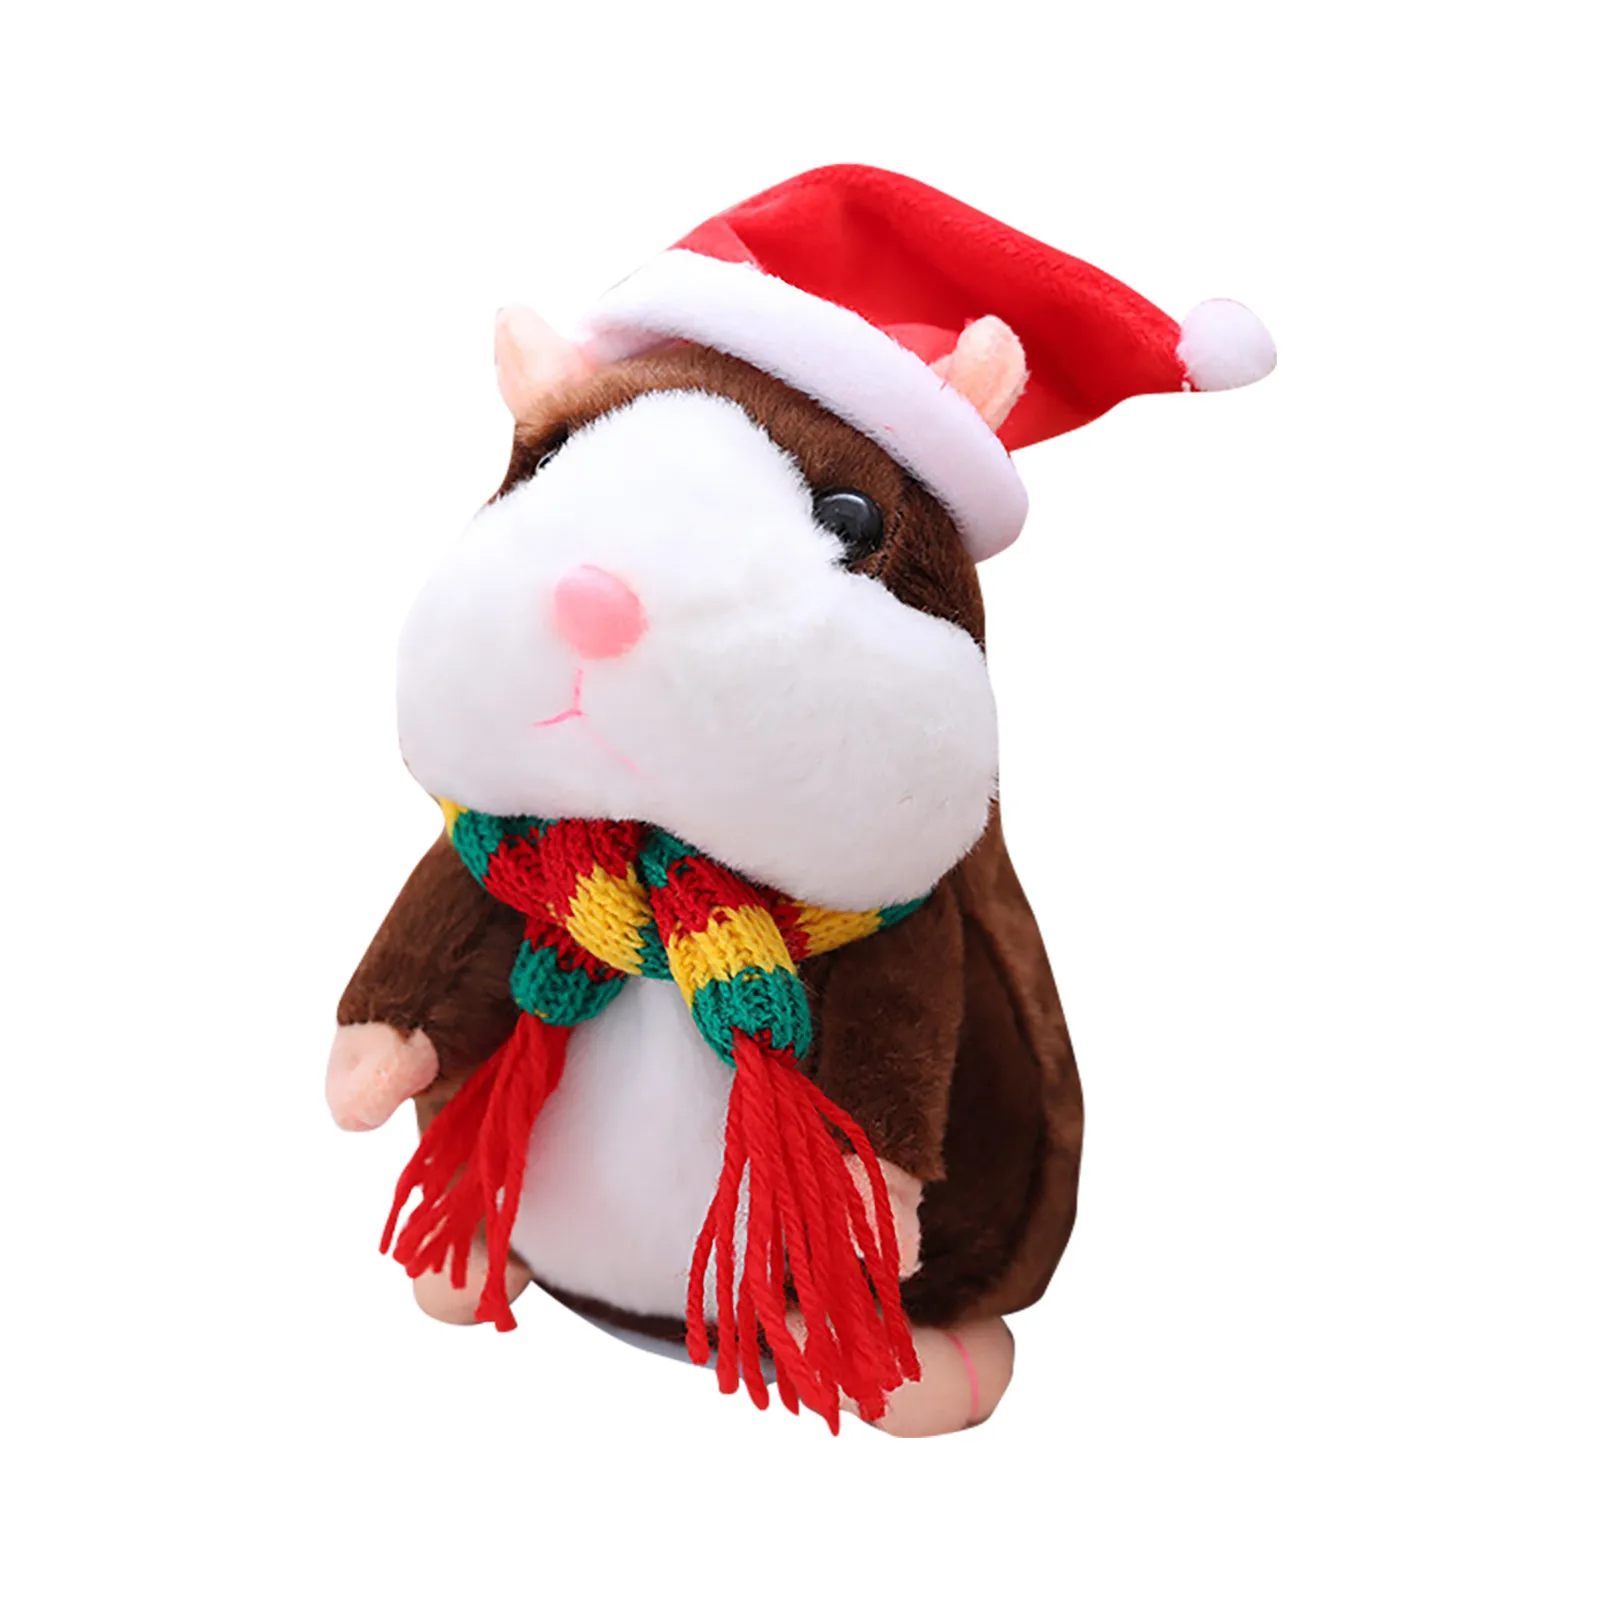 Αγορά Γεμιστά ζώα και λούτρινα | Talking Hamster Plush Toy Repeats  Electronic Pets Toy For Baby Children Cute Kawaii Anime Animal Stuffed  Plush Toys Xmas Gift